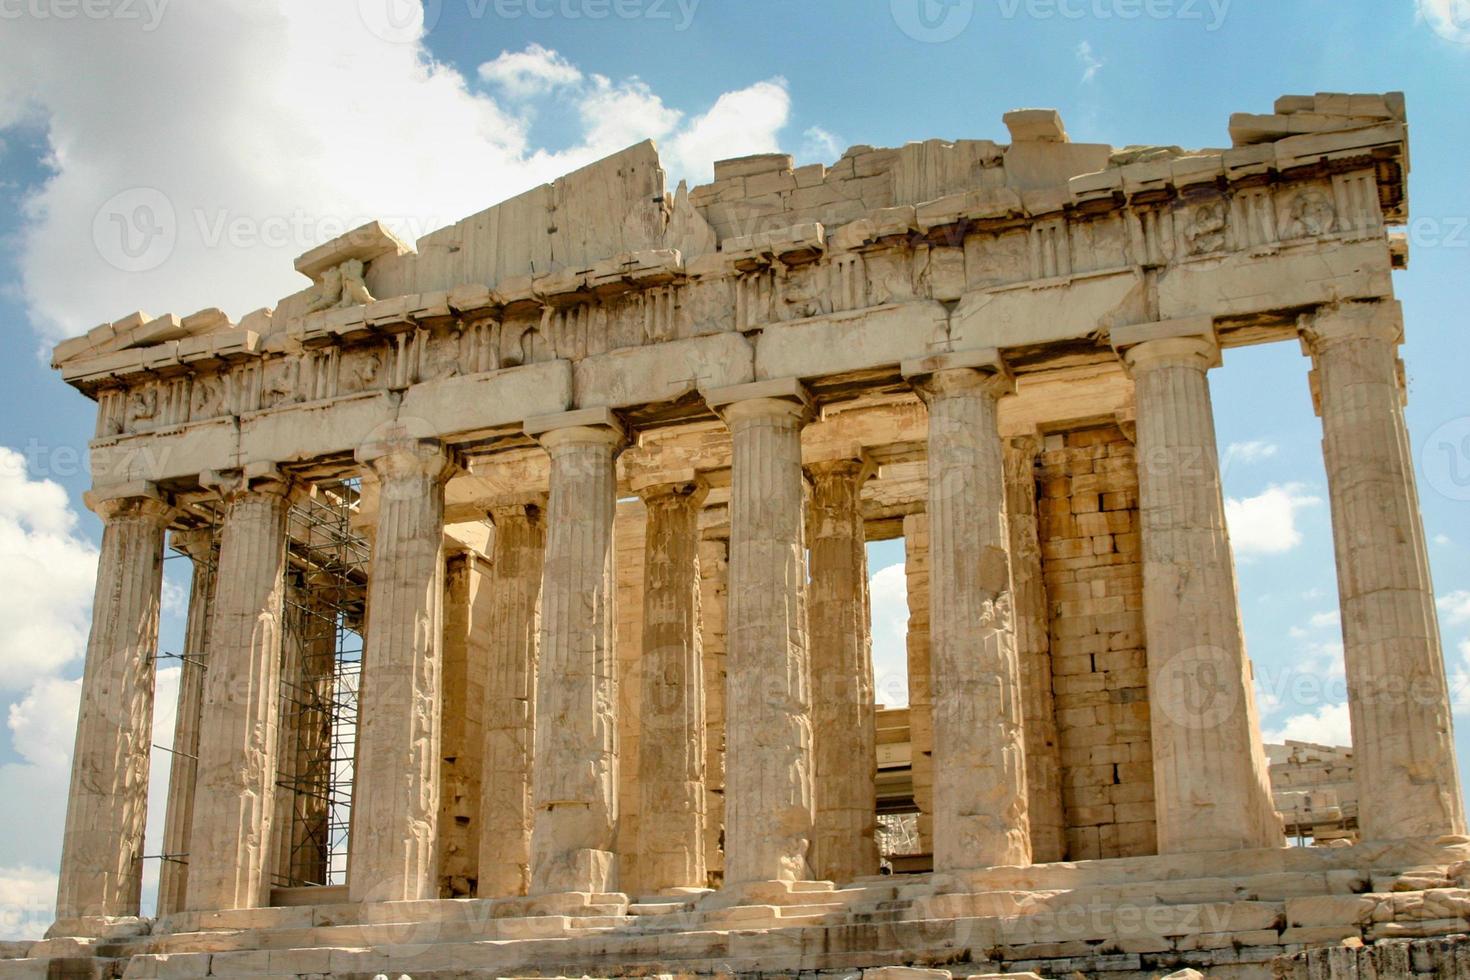 de ruïnes in de historische stad Athene Griekenland, het Parthenon, de Akropolis en de heuvel van Mars foto